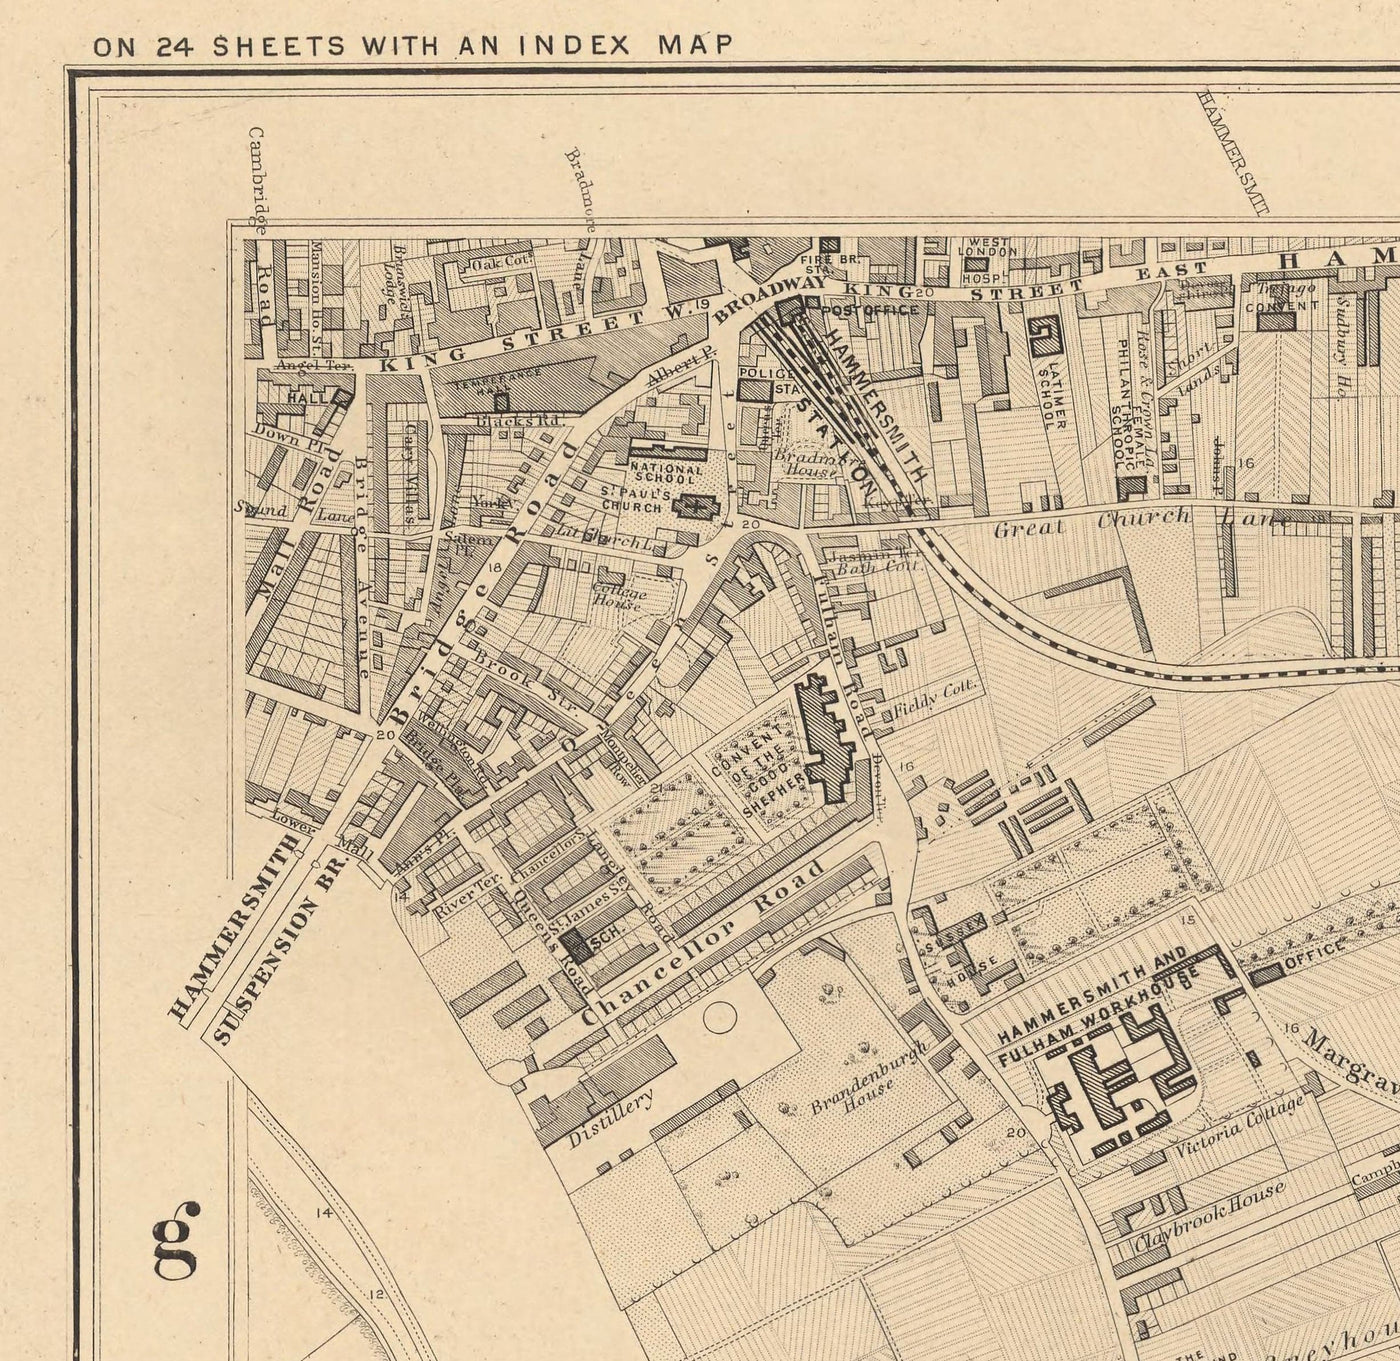 Mapa antiguo de West London en 1862 de Edward Stanford - Fulham, Brompton, Battersea, Hammersmith - SW6, SW10, SW15, SW18, SW10, SW11, SW5, W6, W14